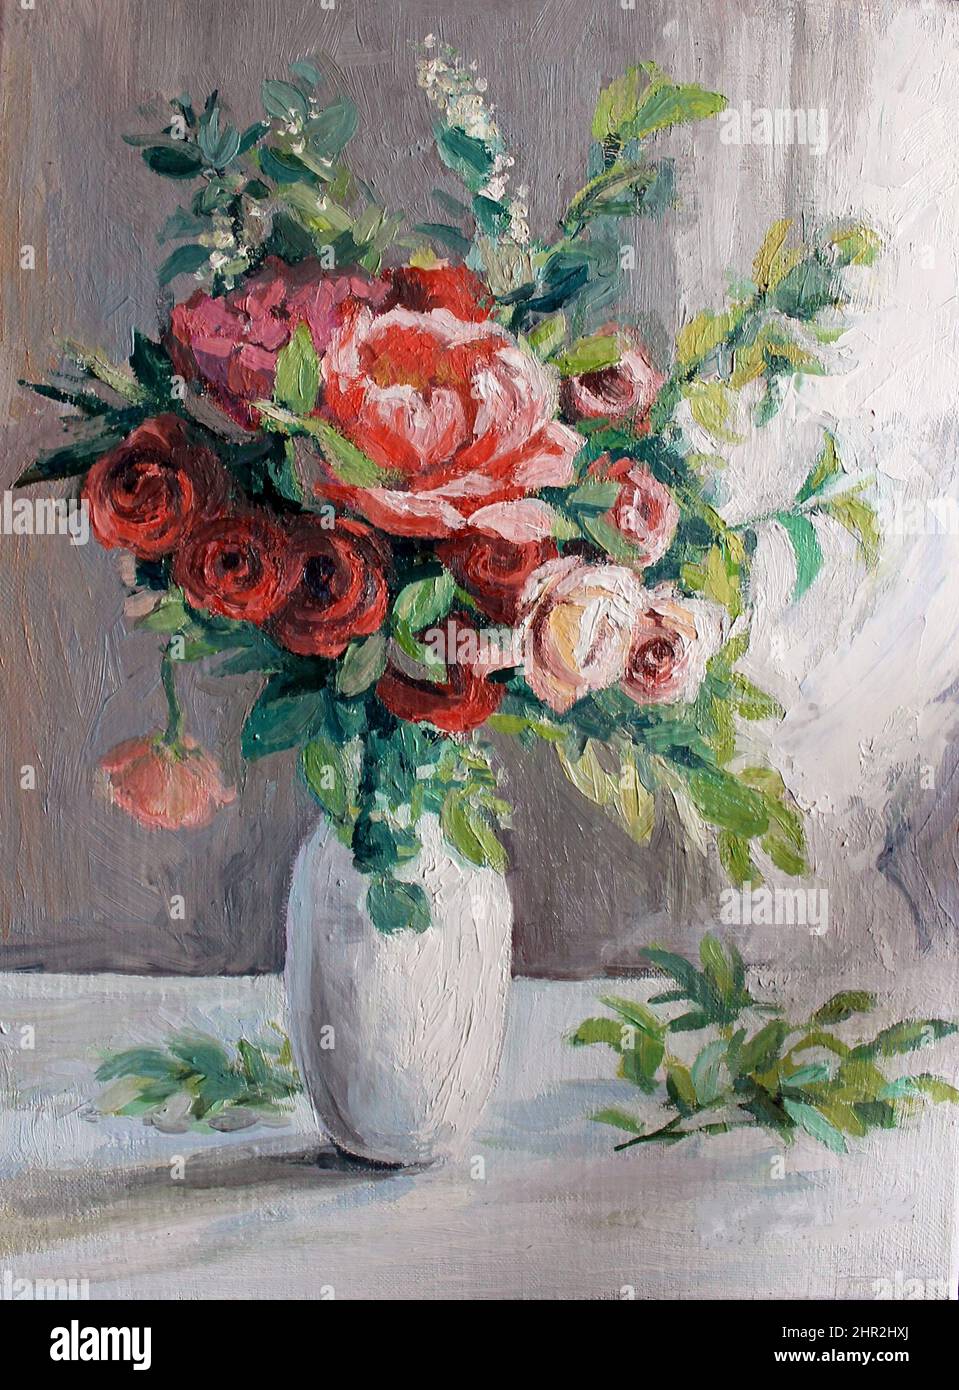 Peinture à l'huile : roses dans un vase blanc. Texture de la peinture. Les fleurs sont peintes de manière impressionniste. Couleurs pastel vives, lumière douce. Banque D'Images